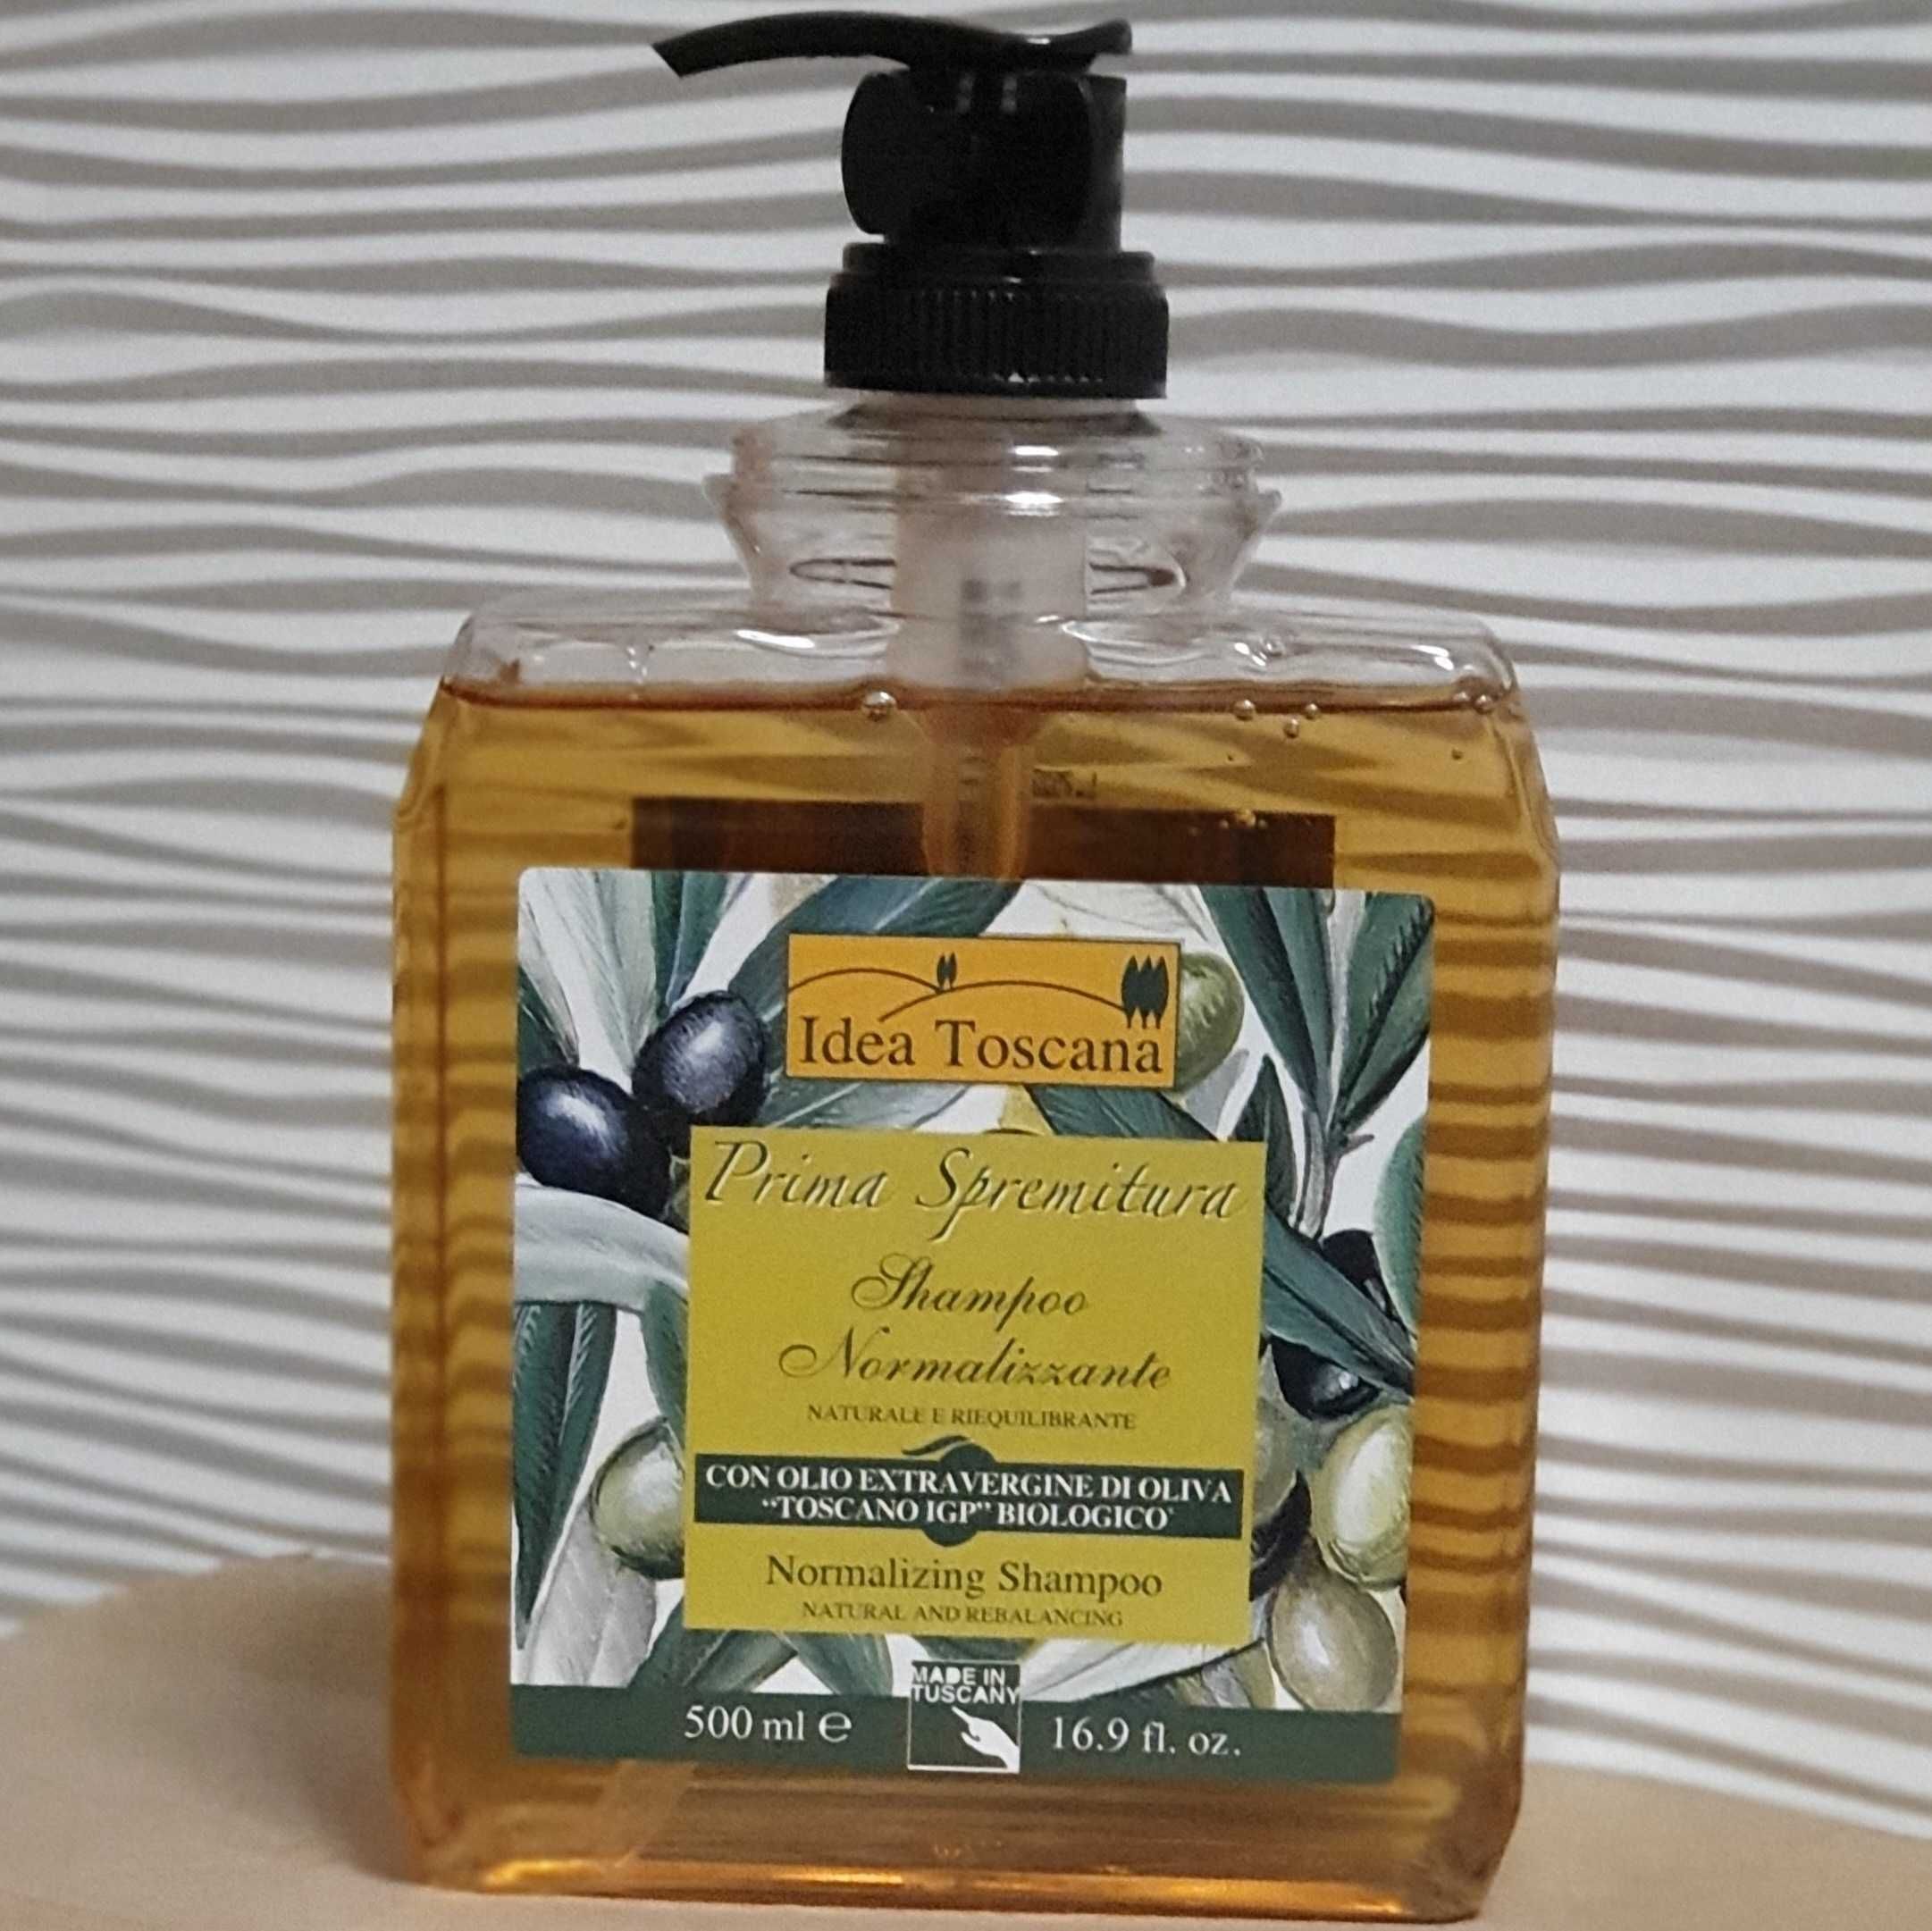 Normalizujący szampon do włosów z oliwą 500ml Idea Toscana